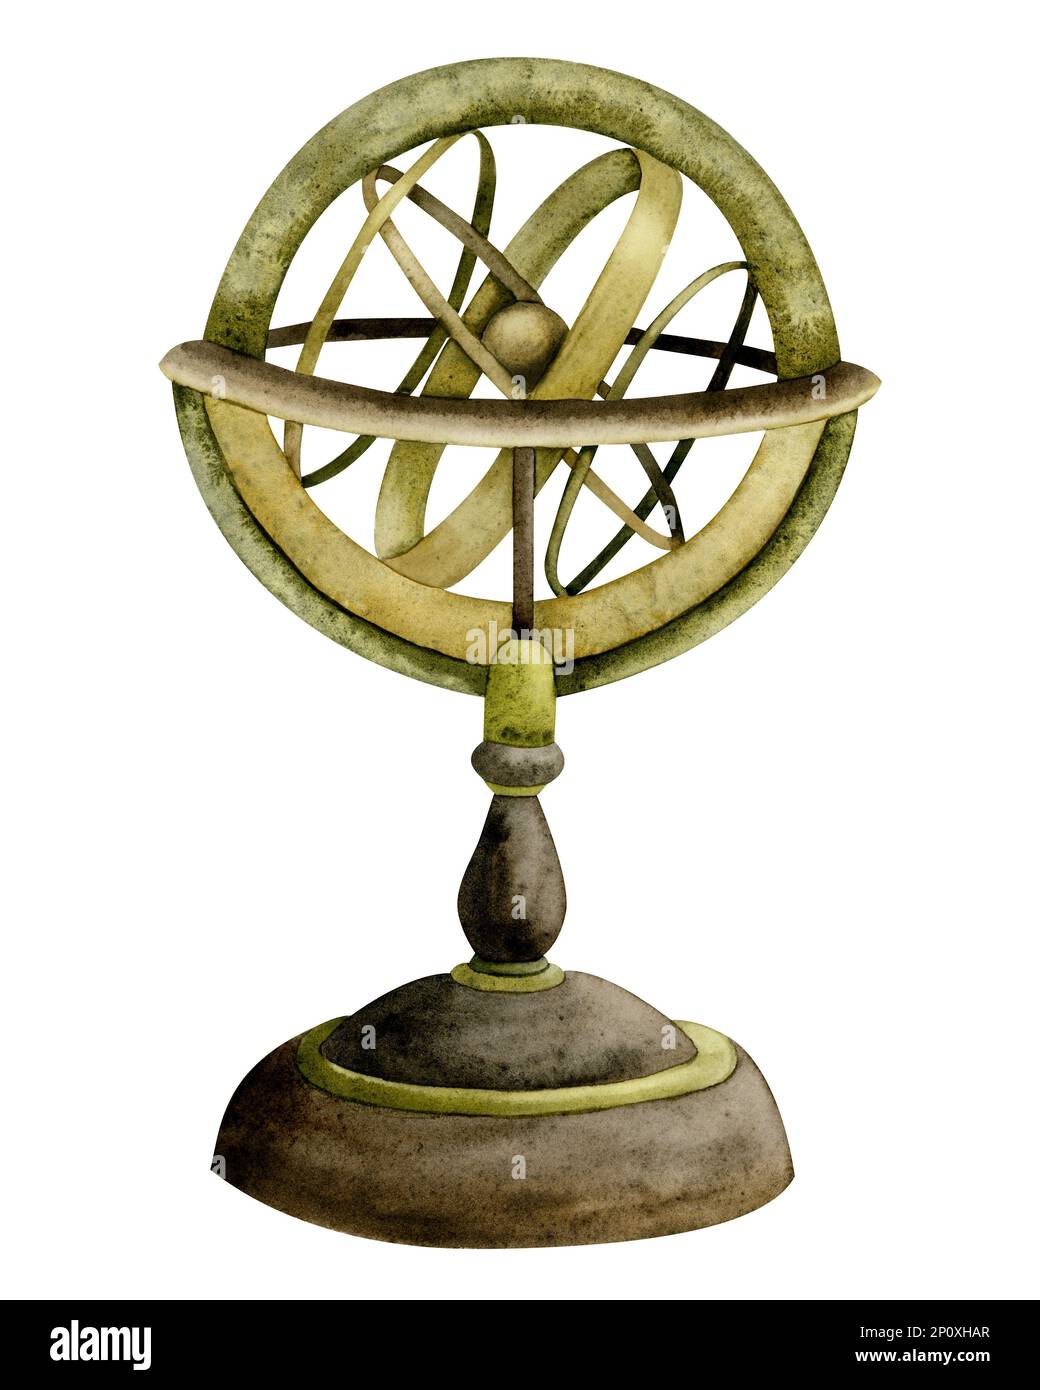 Aquarellnavigation Armillarsphäre, klassische sphärische Astrolabe Instrumentendarstellung isoliert auf Weiß. Stockfoto